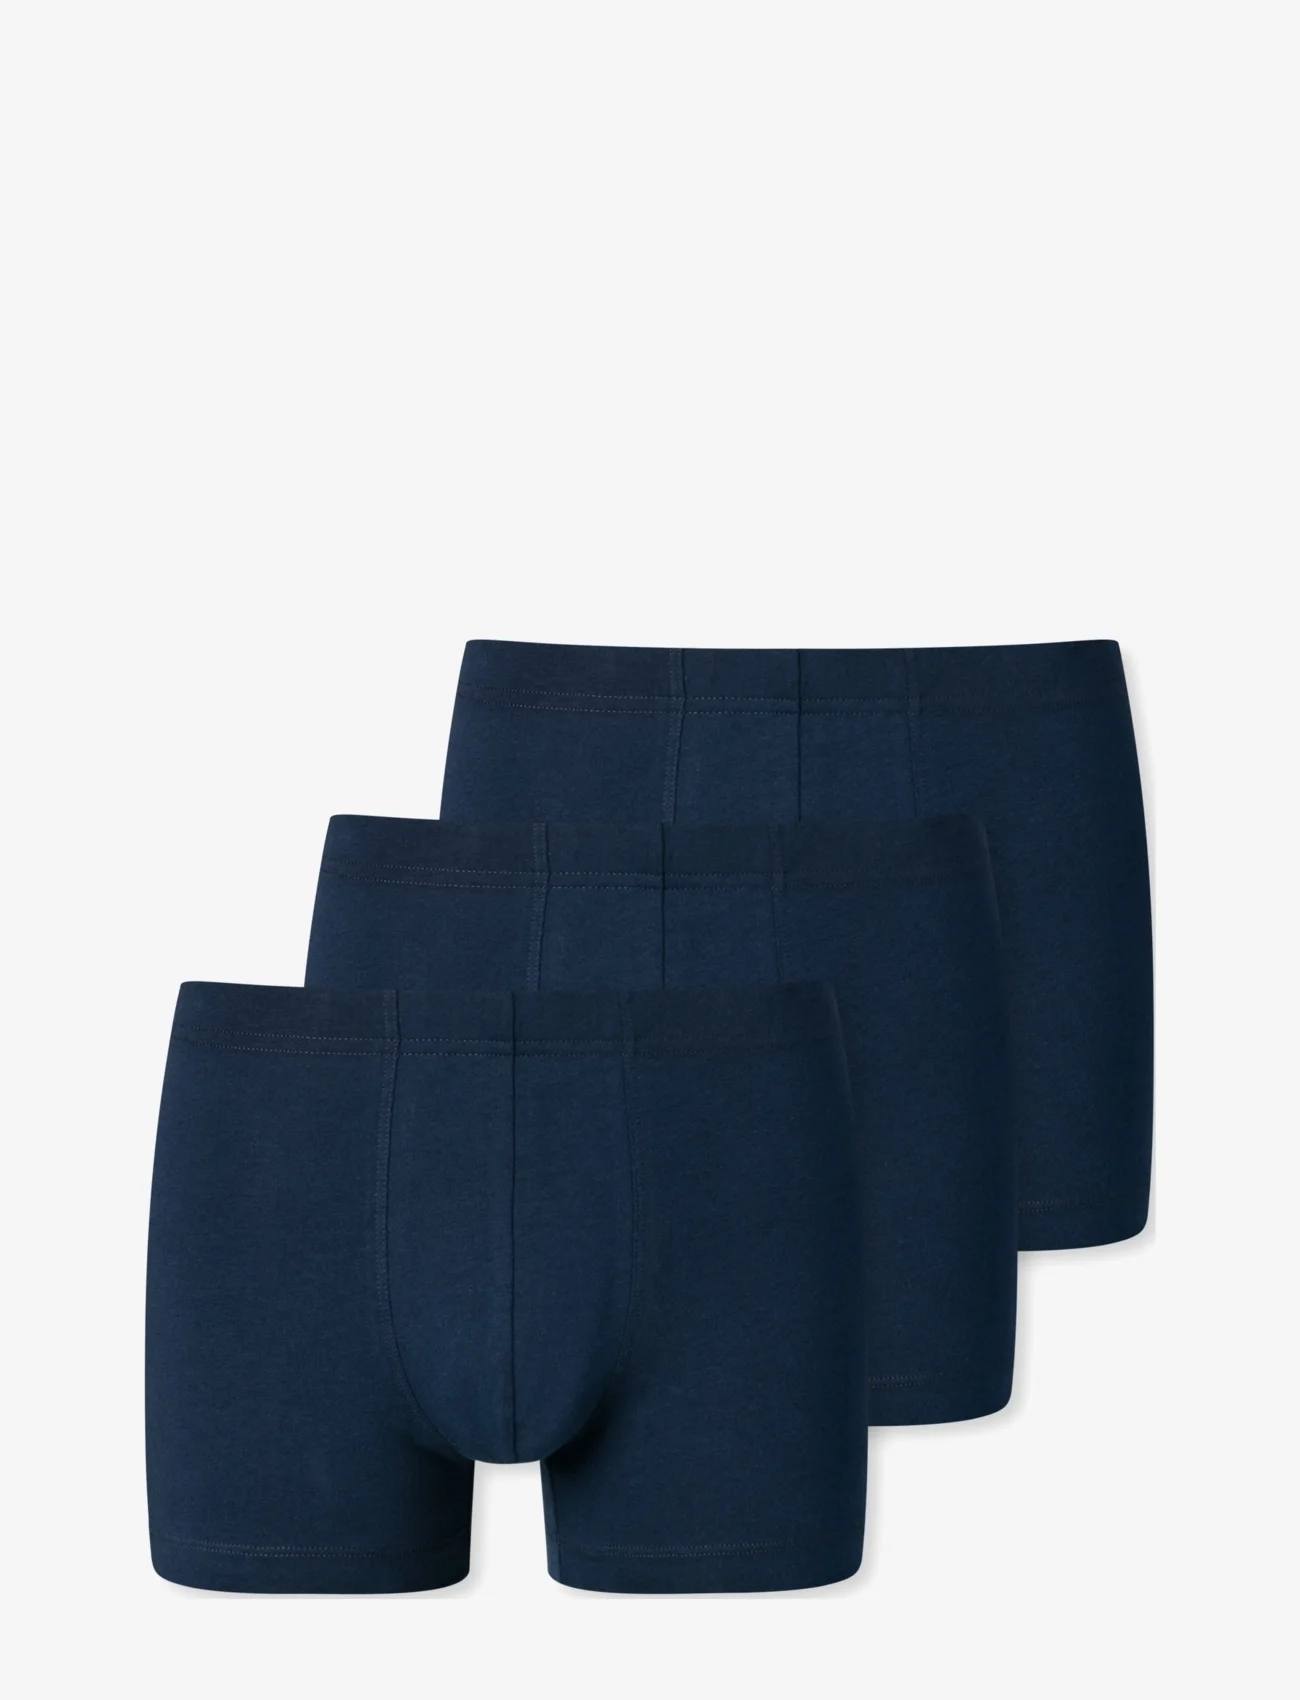 Schiesser - Shorts - boxer briefs - dark blue - 0